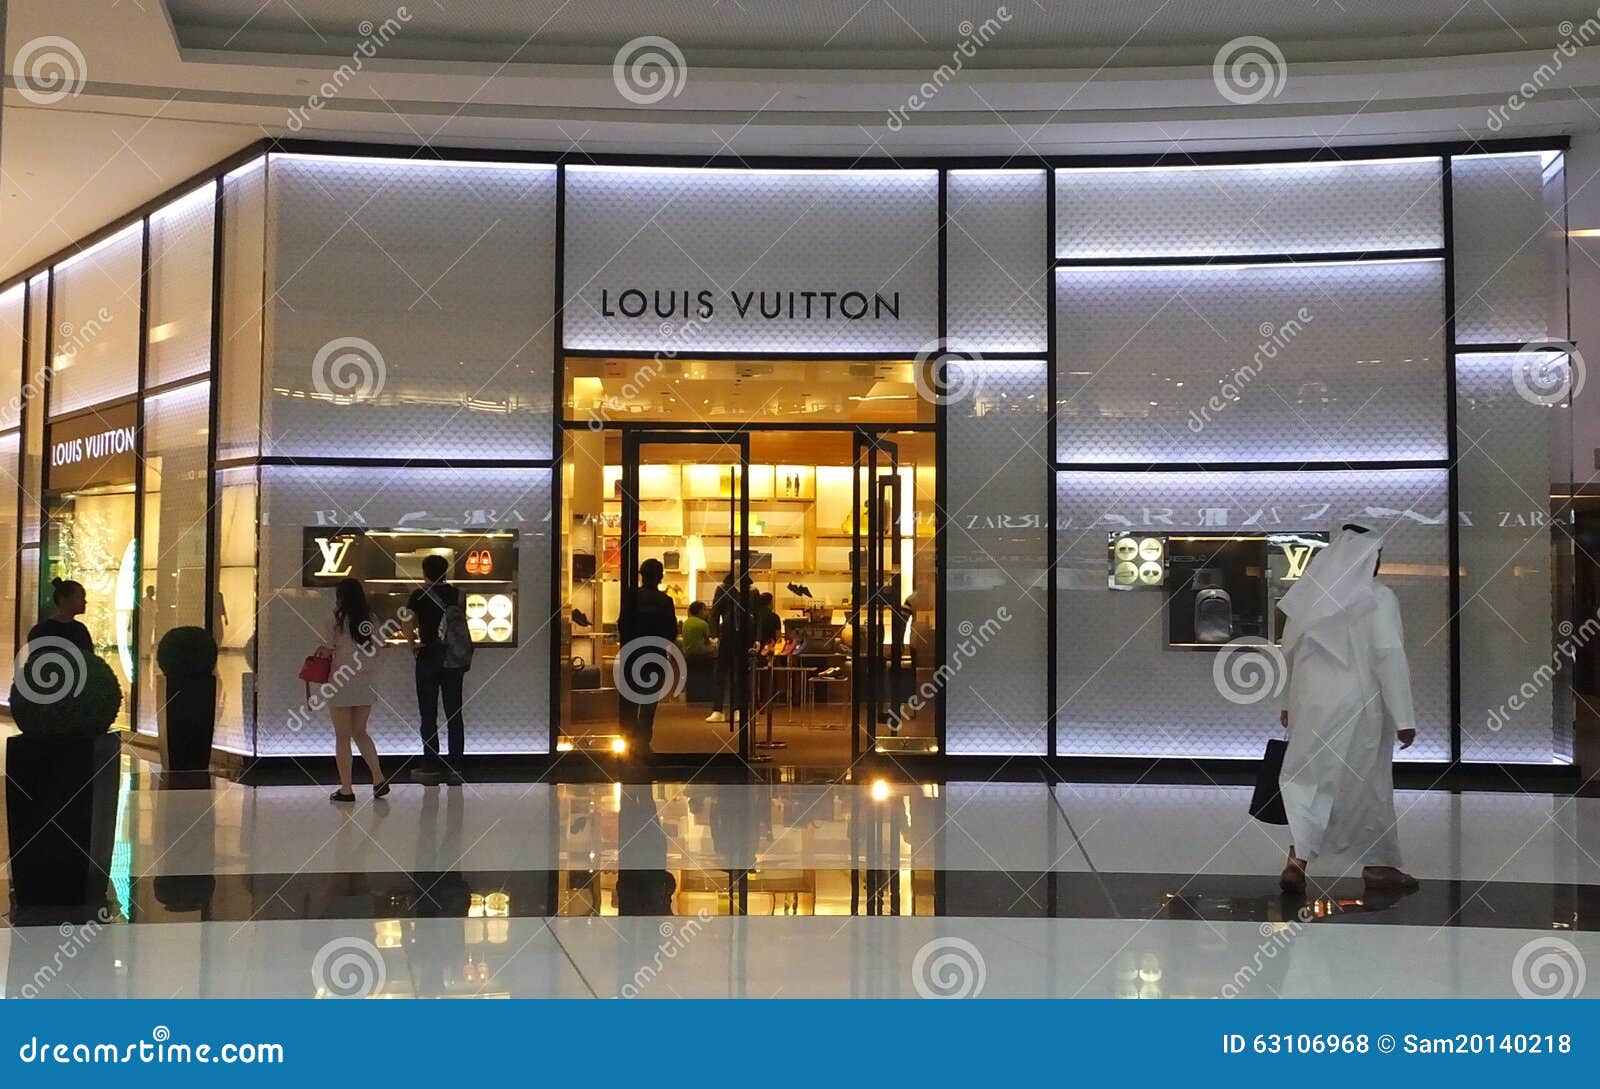 Louis Vuitton(Fashion Accessories) in Burj Khalifa, Dubai - HiDubai